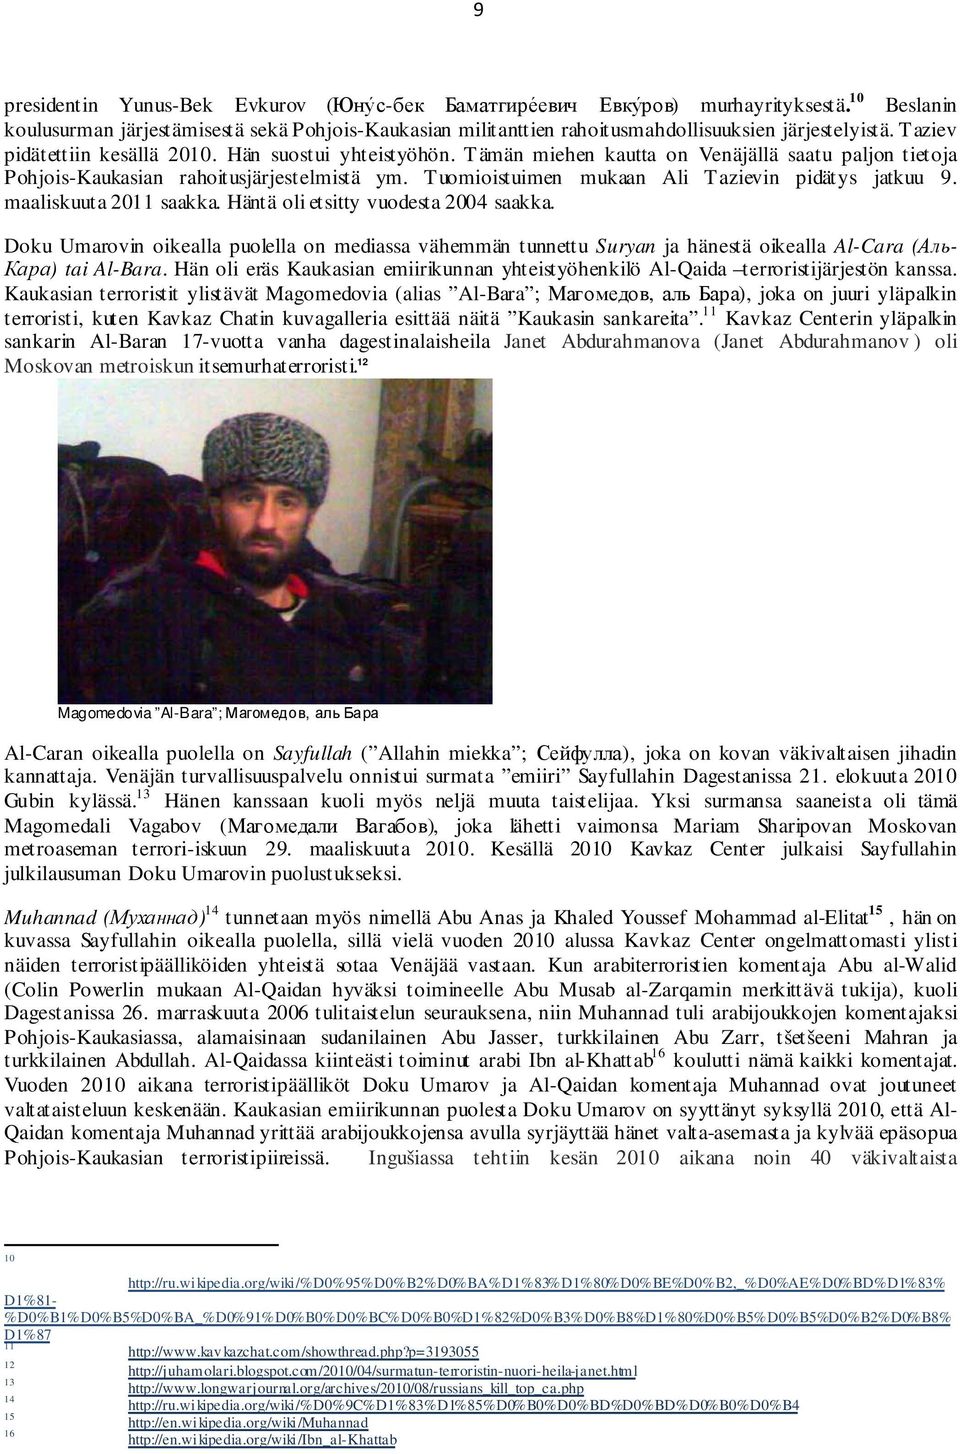 Tämän miehen kautta on Venäjällä saatu paljon tietoja Pohjois-Kaukasian rahoitusjärjestelmistä ym. Tuomioistuimen mukaan Ali Tazievin pidätys jatkuu 9. maaliskuuta 2011 saakka.